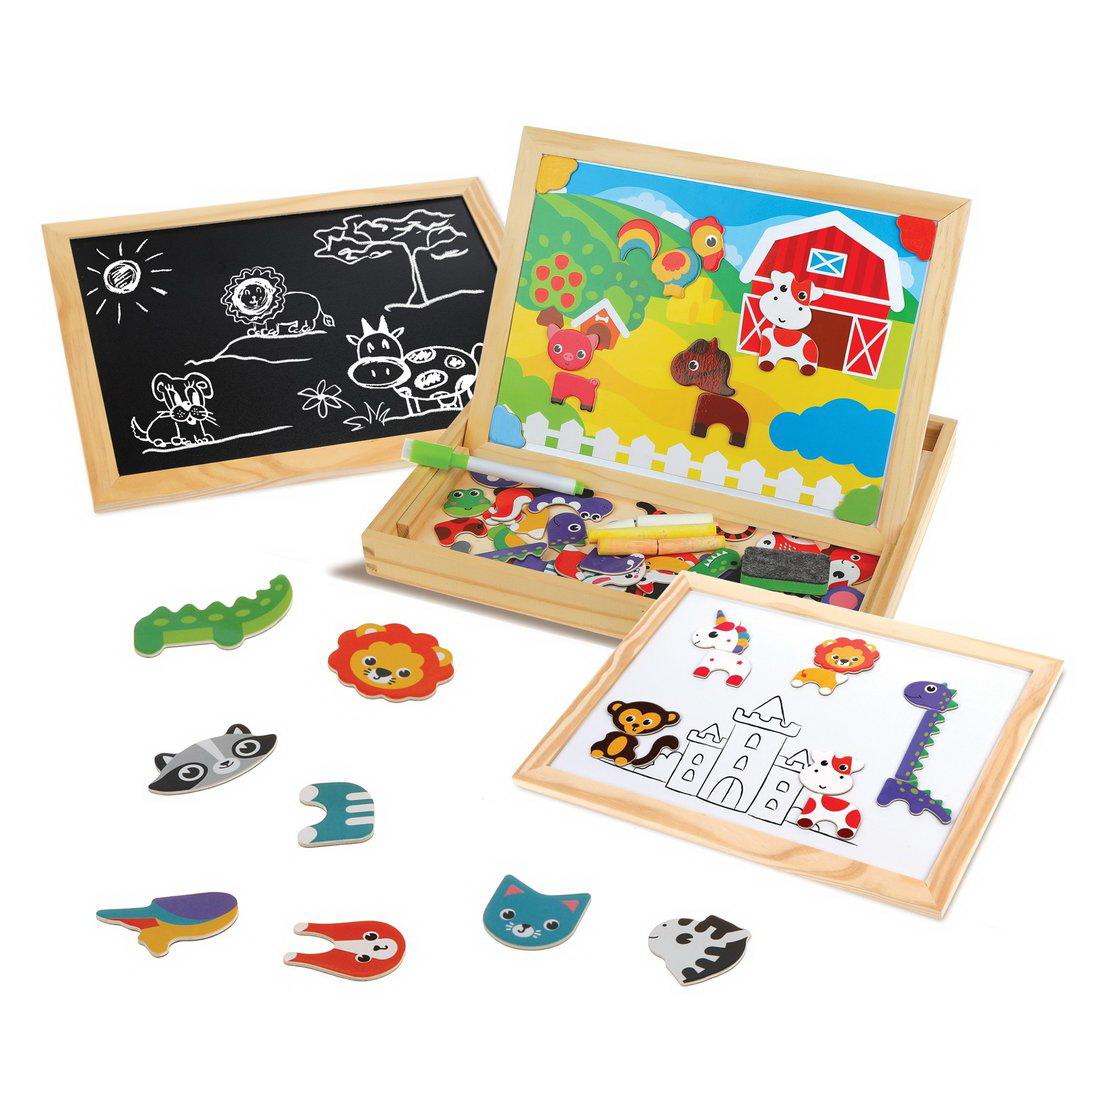 Игровой набор Mapacha Бизи-чемоданчик Животные доска для рисования, меловая доска, фигурки на магнитах, 2 игровых фона, инструкция с готовыми играми